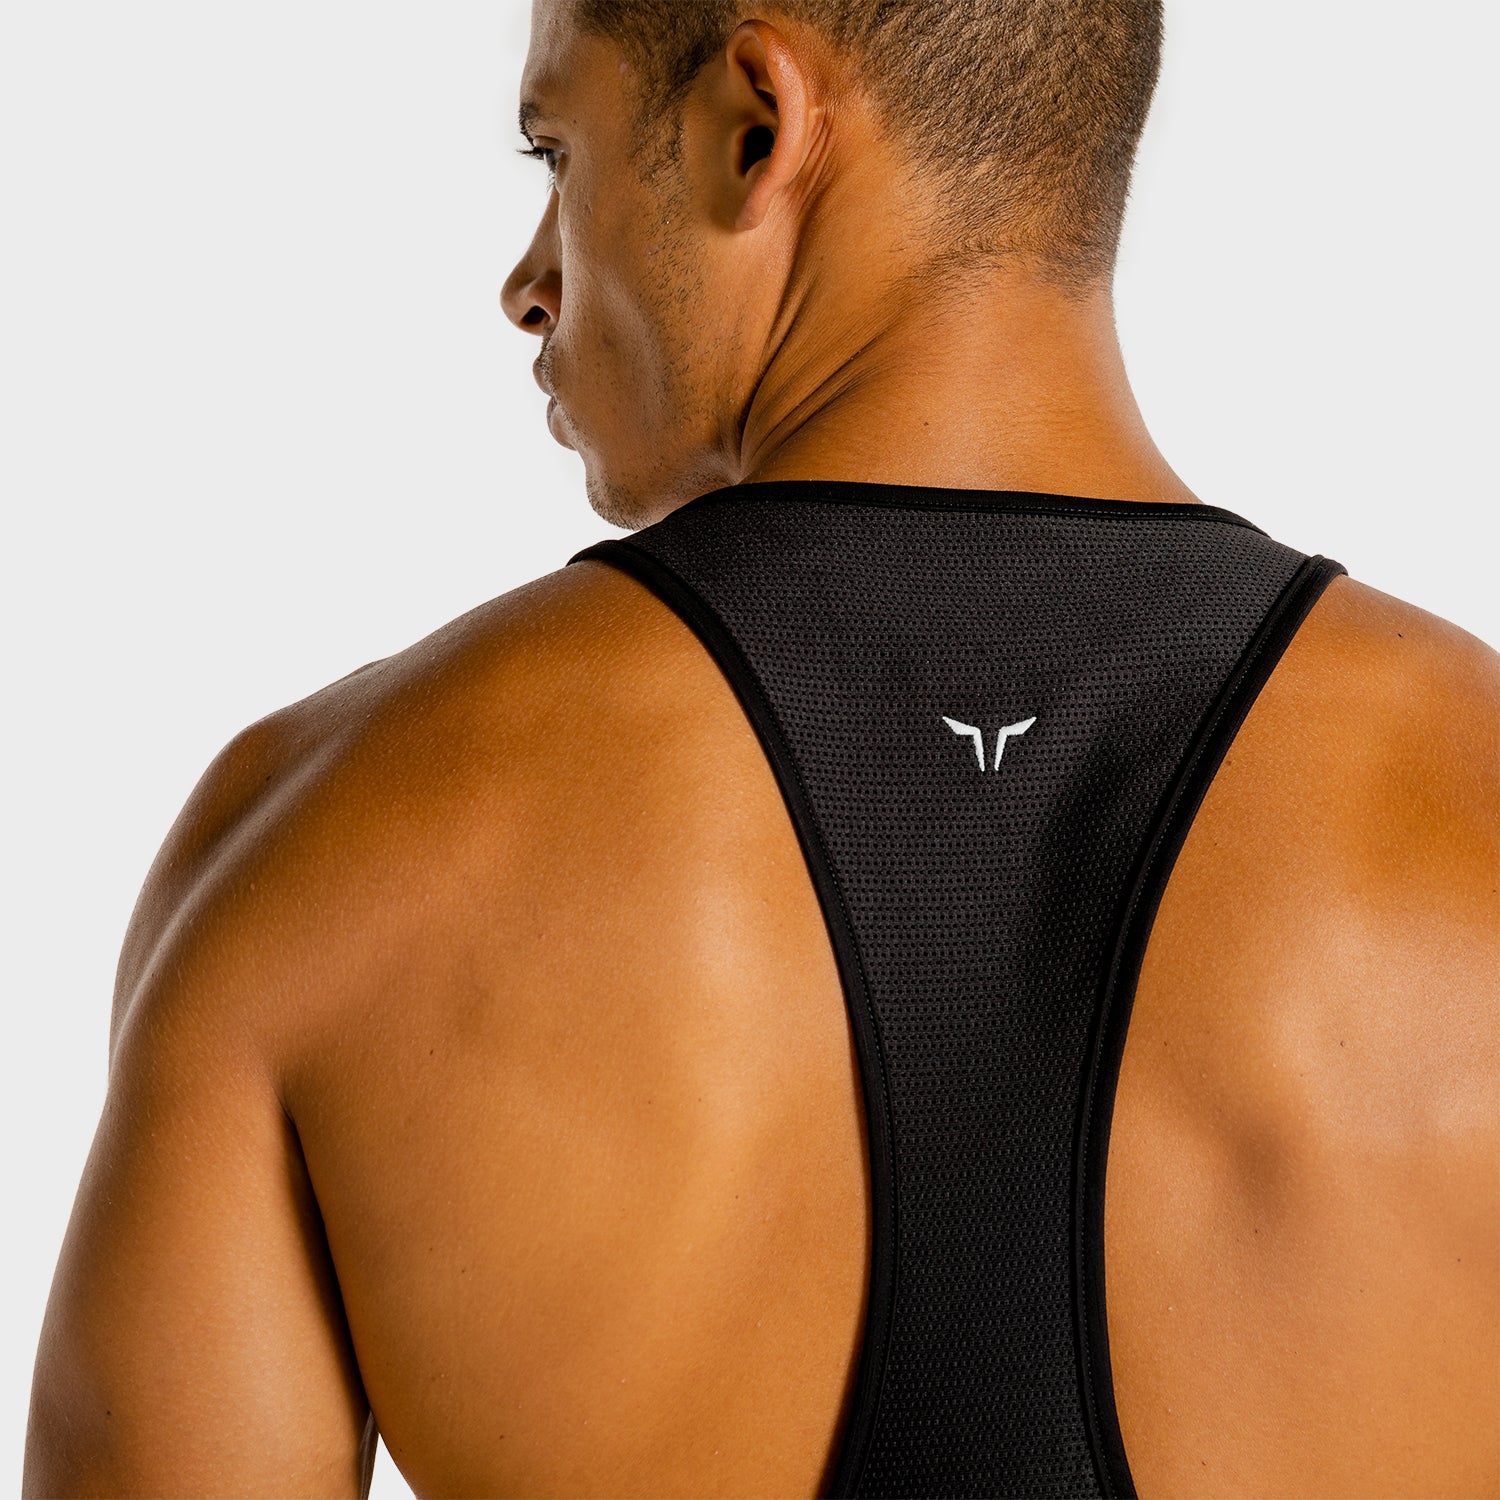 squatwolf-gym-wear-core-stringer-black-stringer-vests-for-men